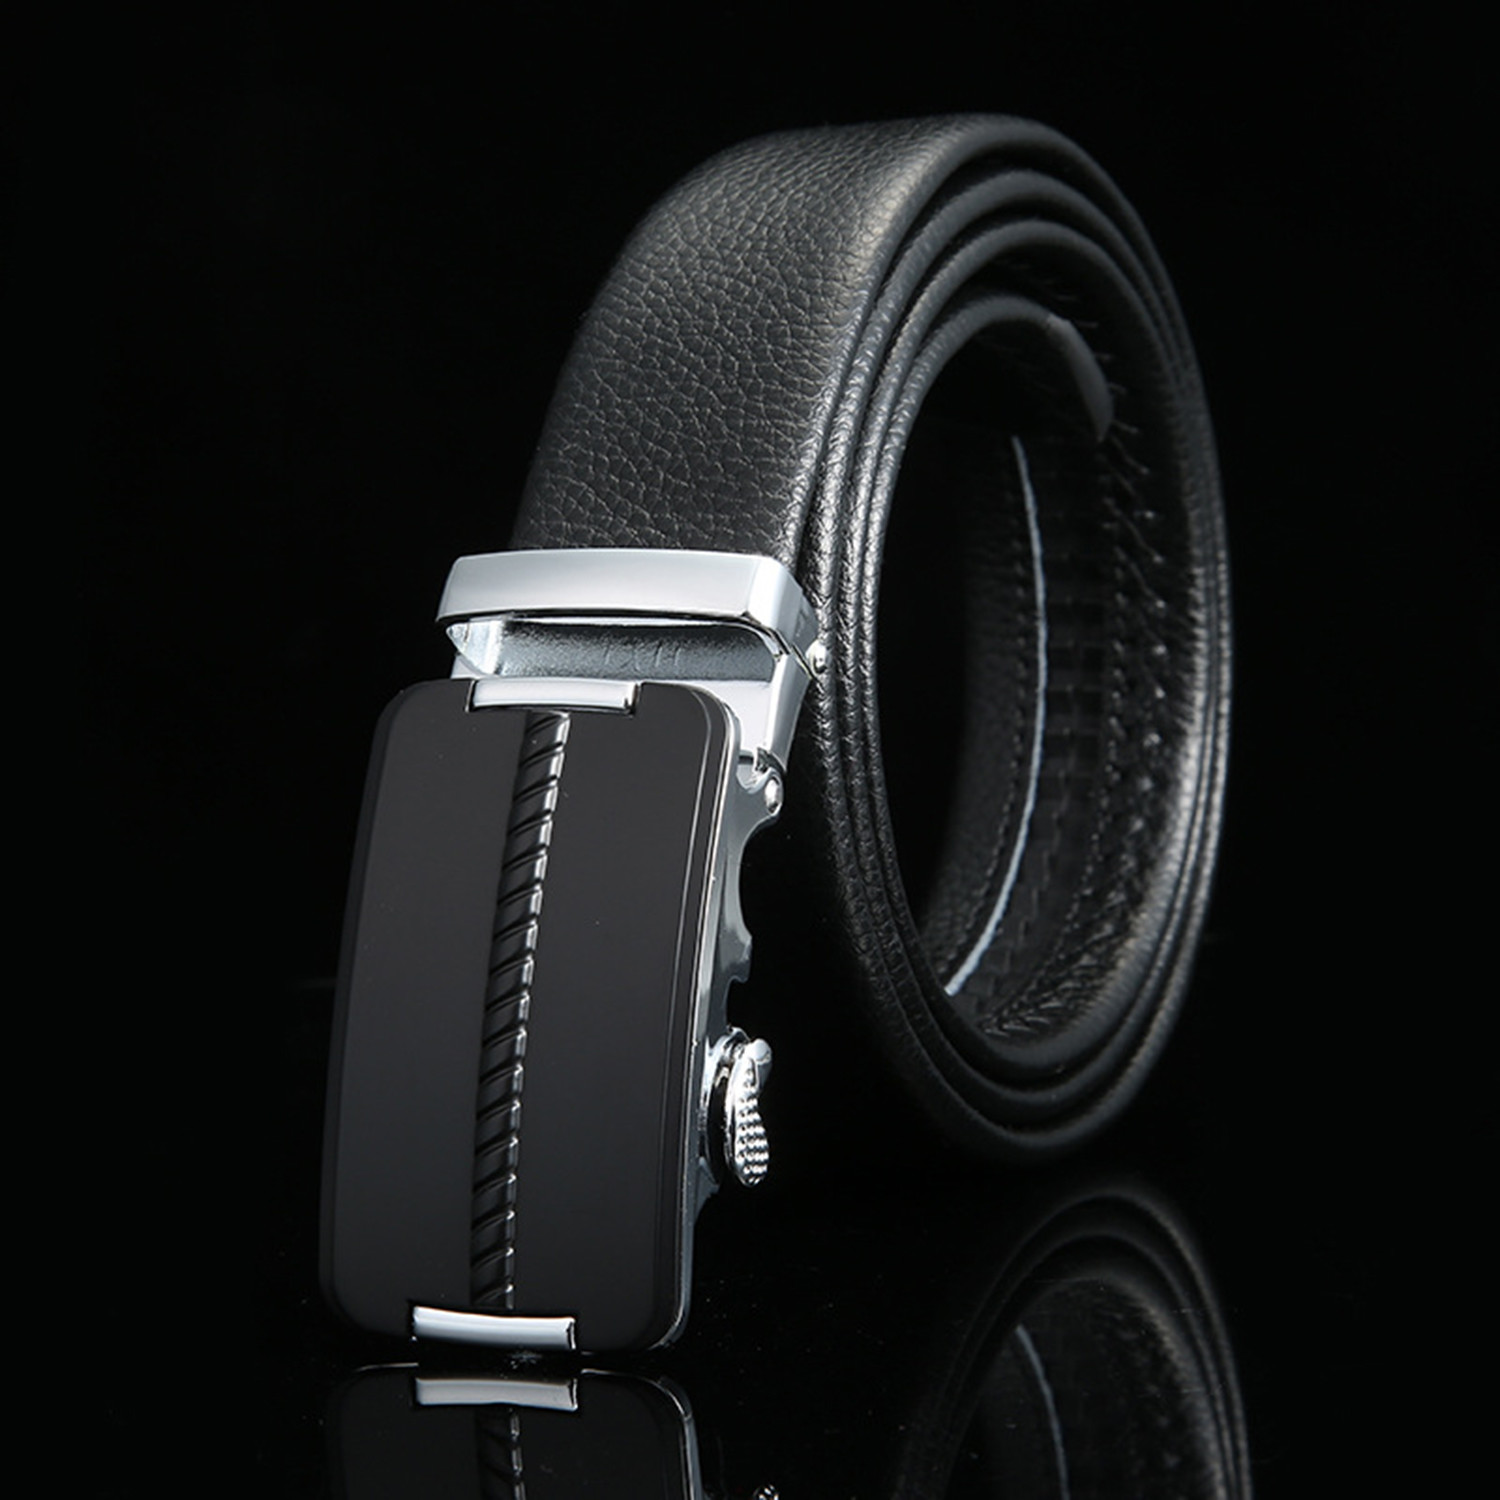 Diagonal Pattern Adjustable Buckle Leather Belt // Black + Silver ...